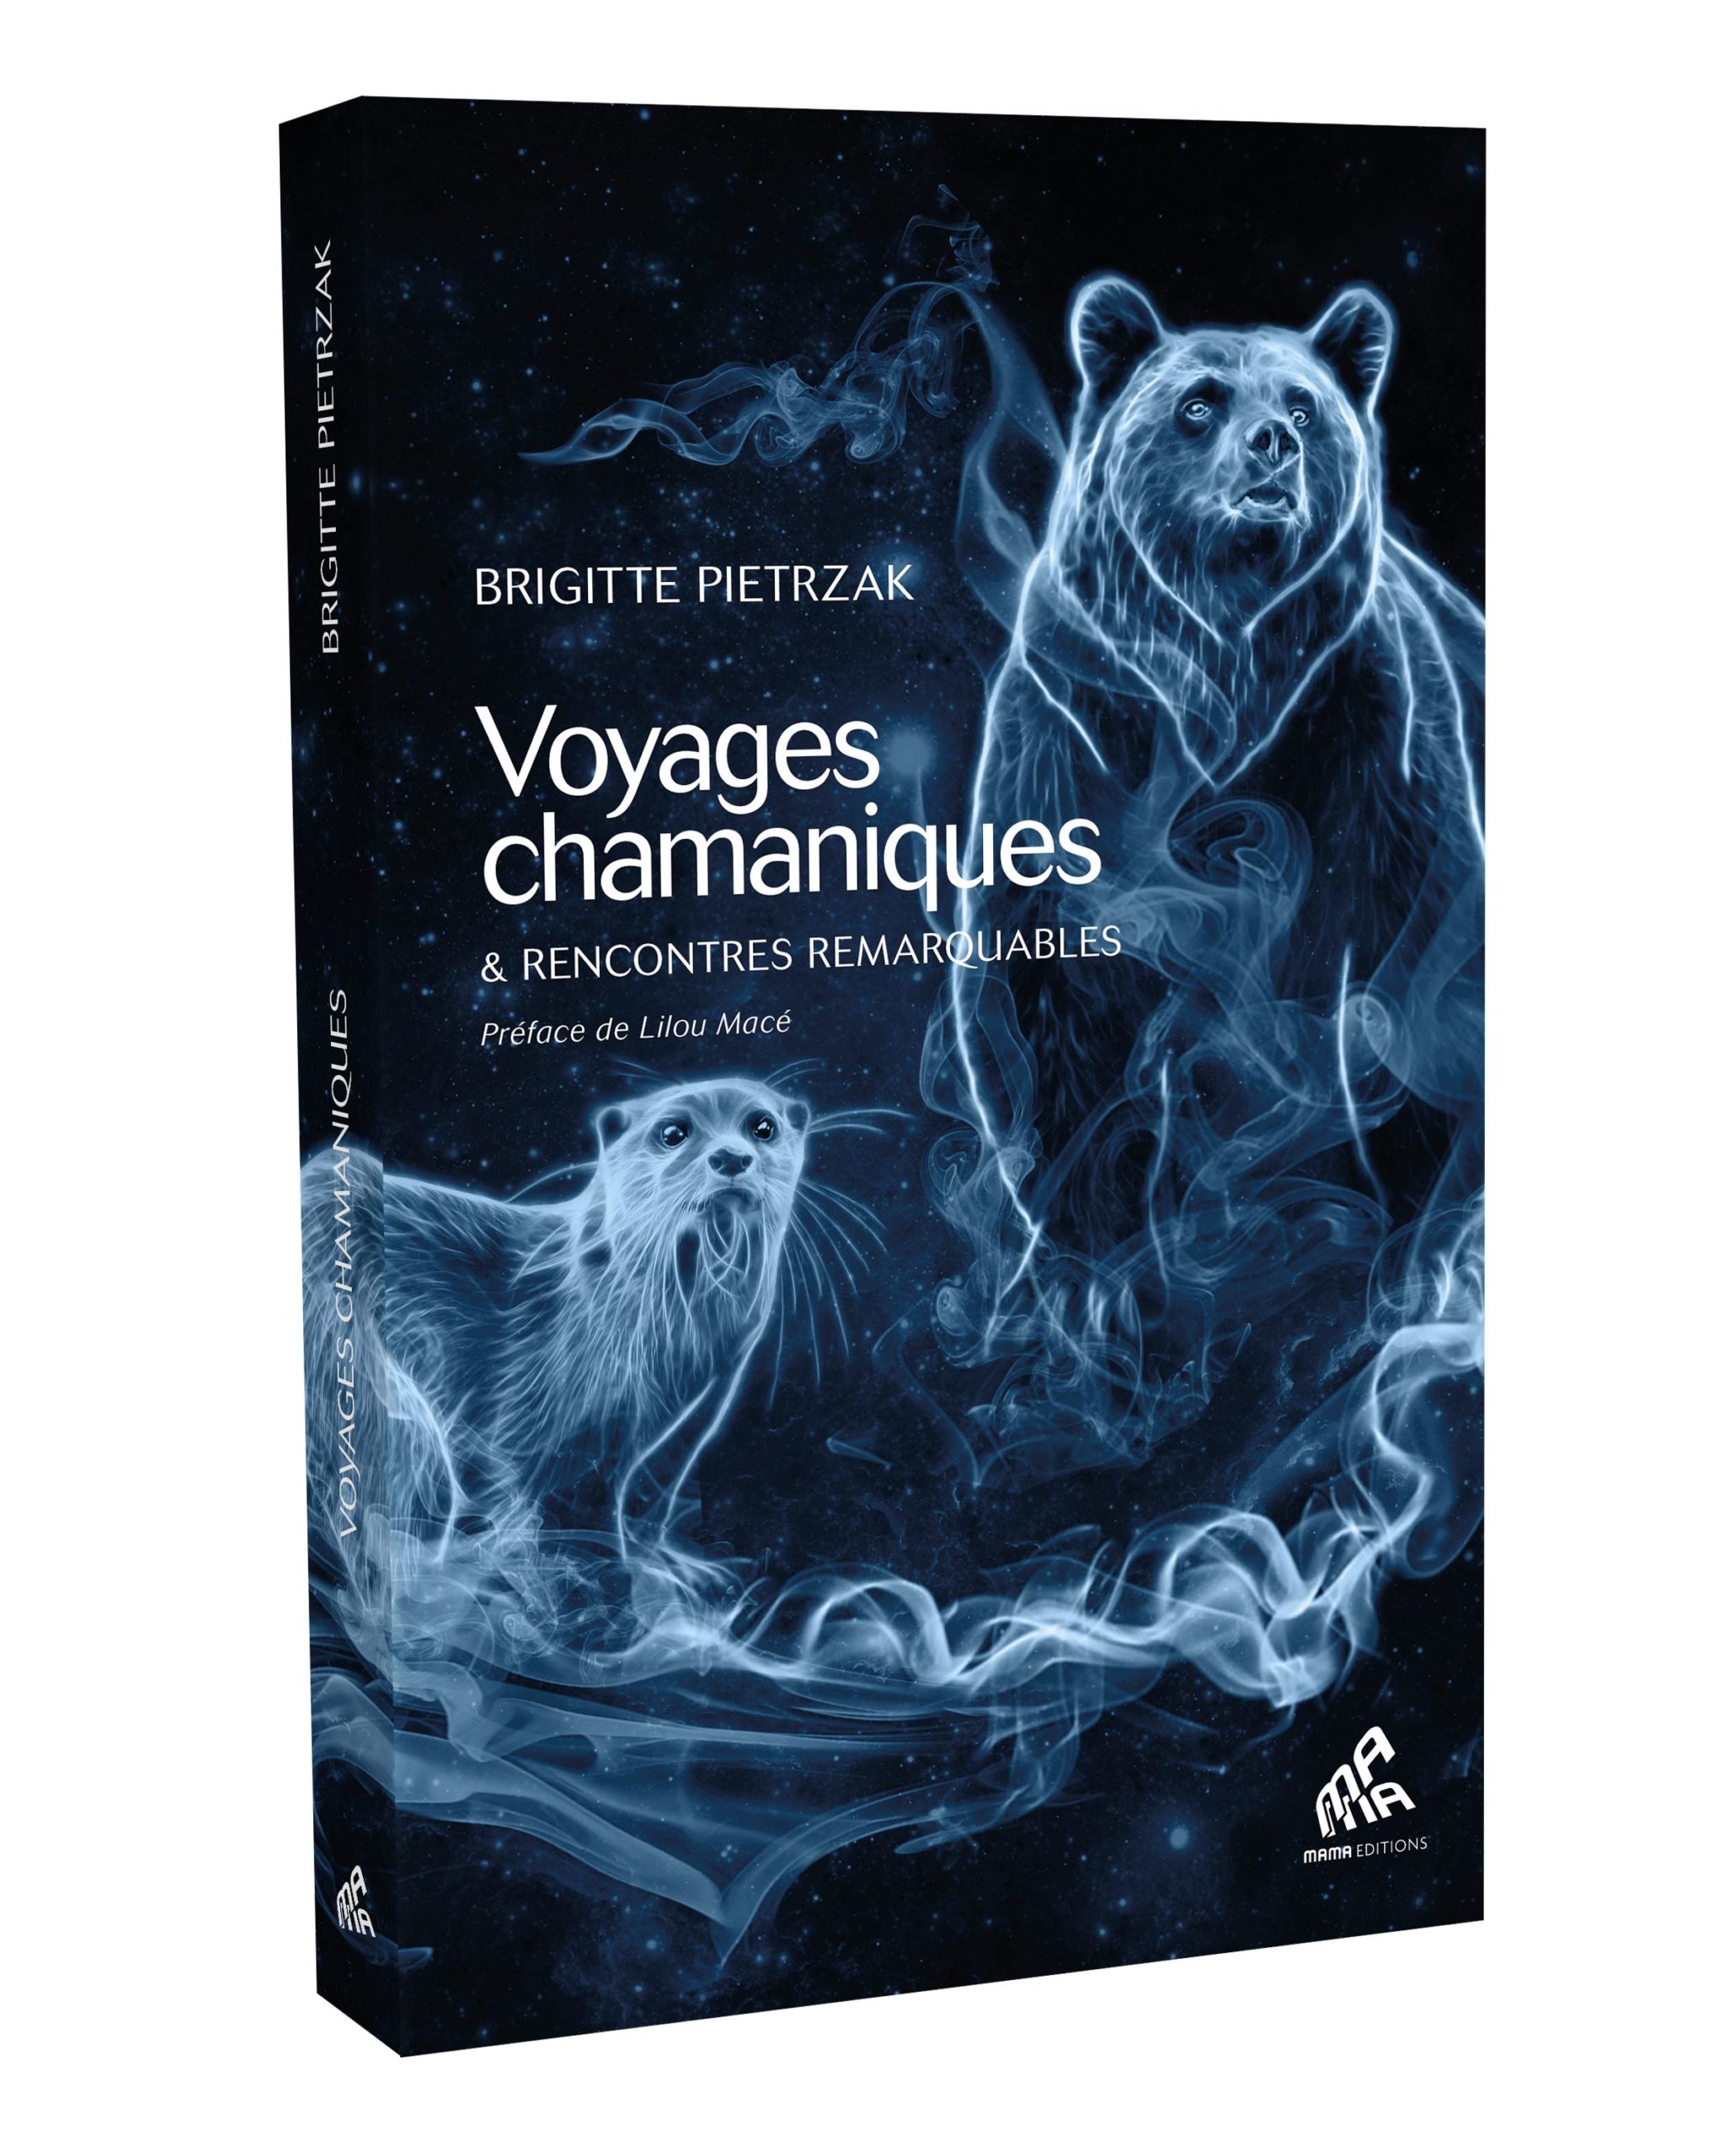 Voyages chamaniques et rencontres remarquables de Brigitte Pietrzak.